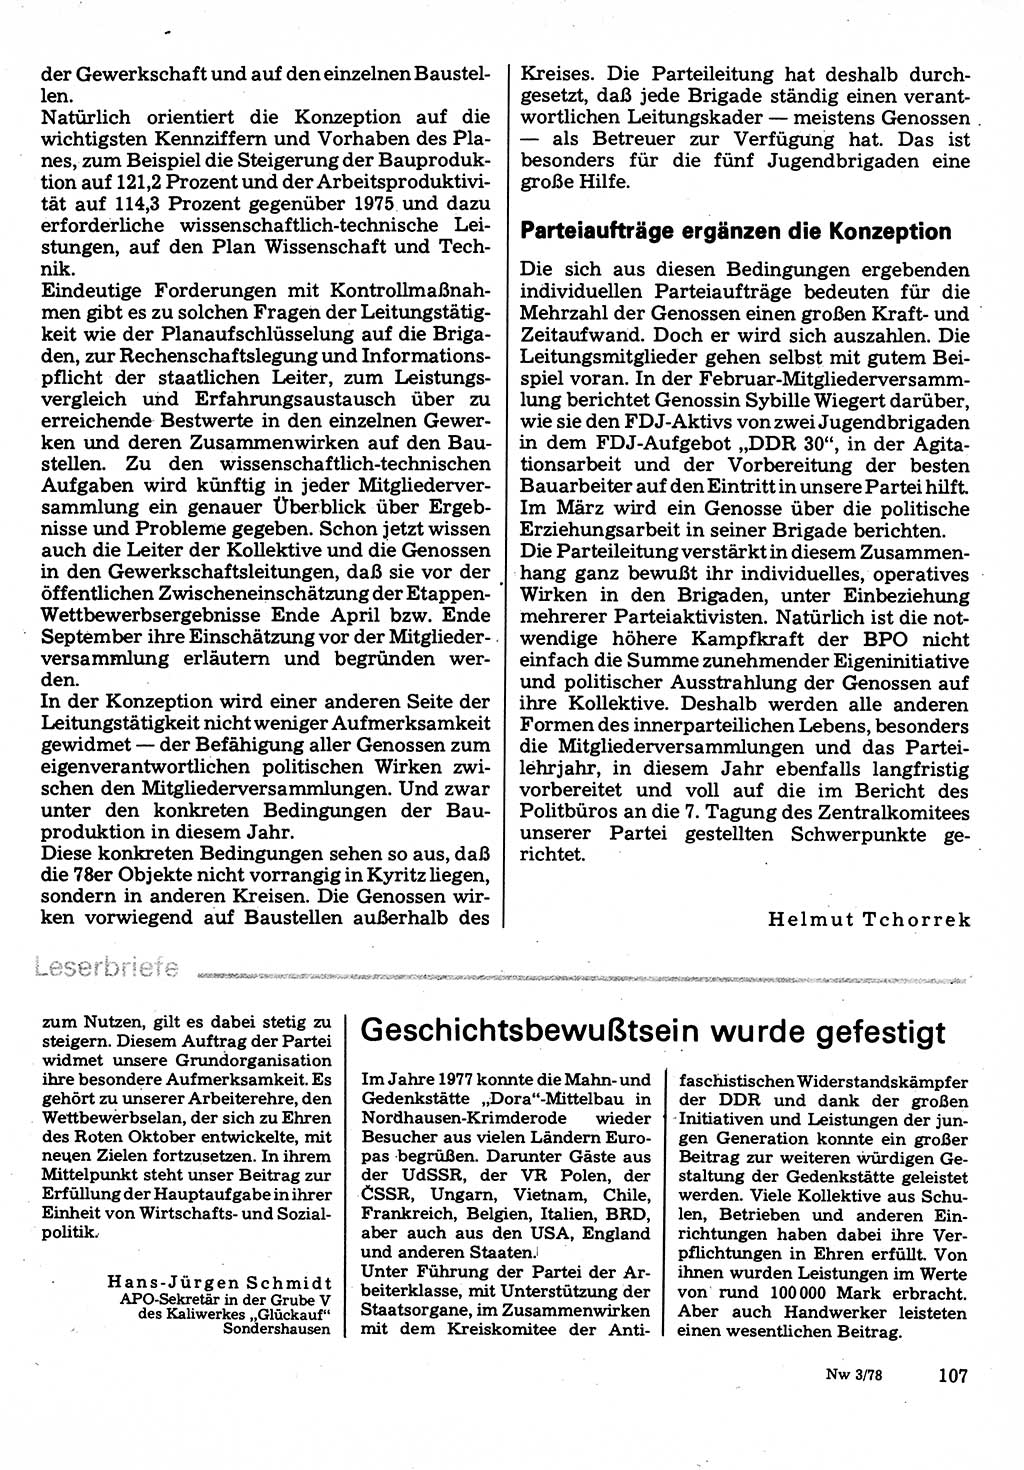 Neuer Weg (NW), Organ des Zentralkomitees (ZK) der SED (Sozialistische Einheitspartei Deutschlands) für Fragen des Parteilebens, 33. Jahrgang [Deutsche Demokratische Republik (DDR)] 1978, Seite 107 (NW ZK SED DDR 1978, S. 107)